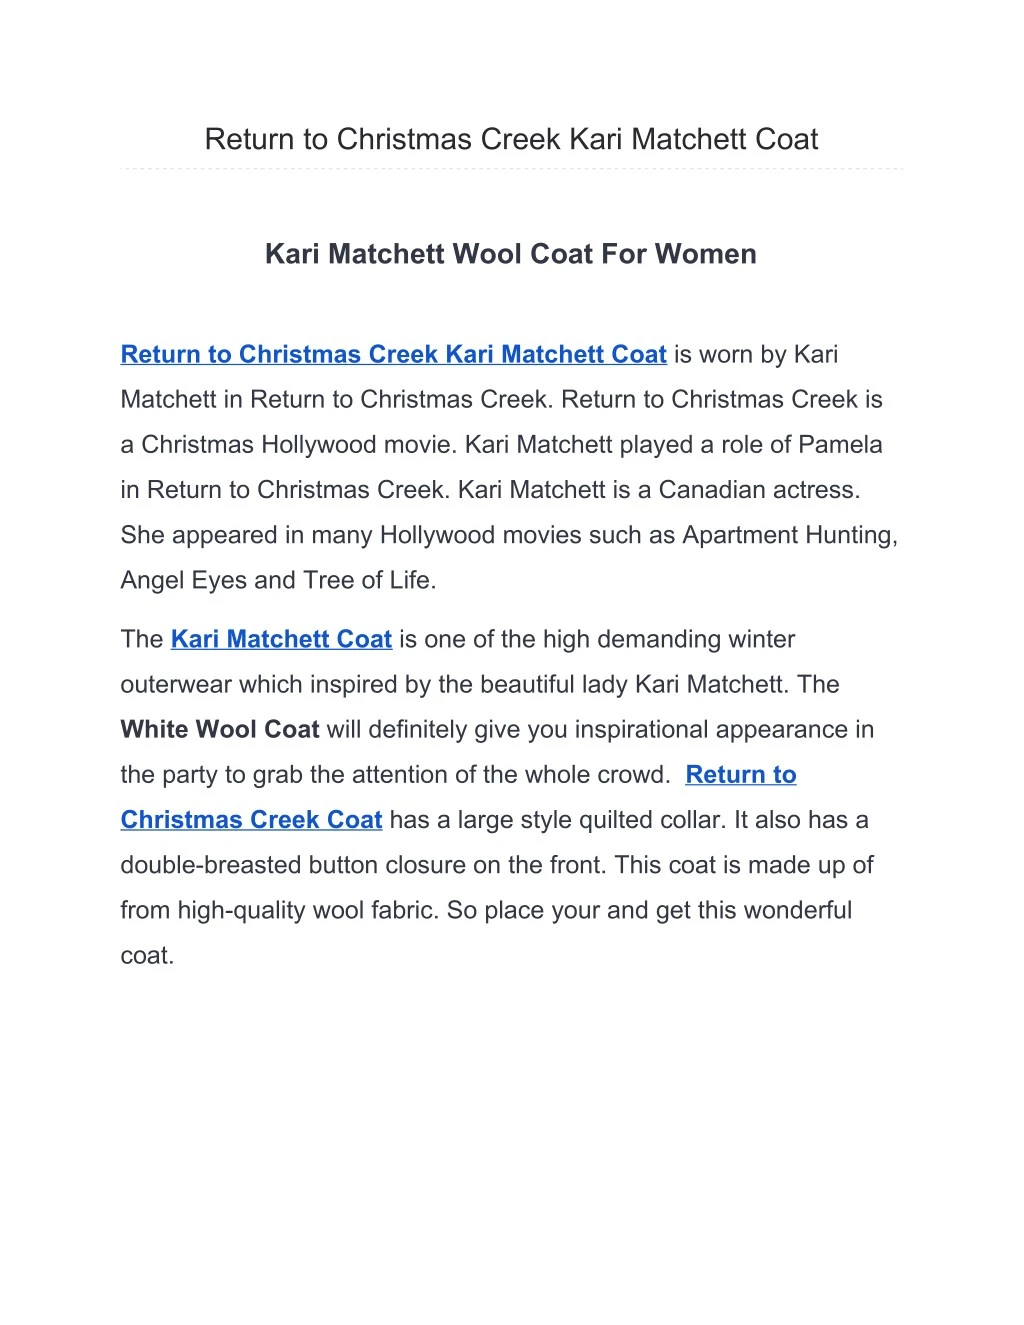 return to christmas creek kari matchett coat